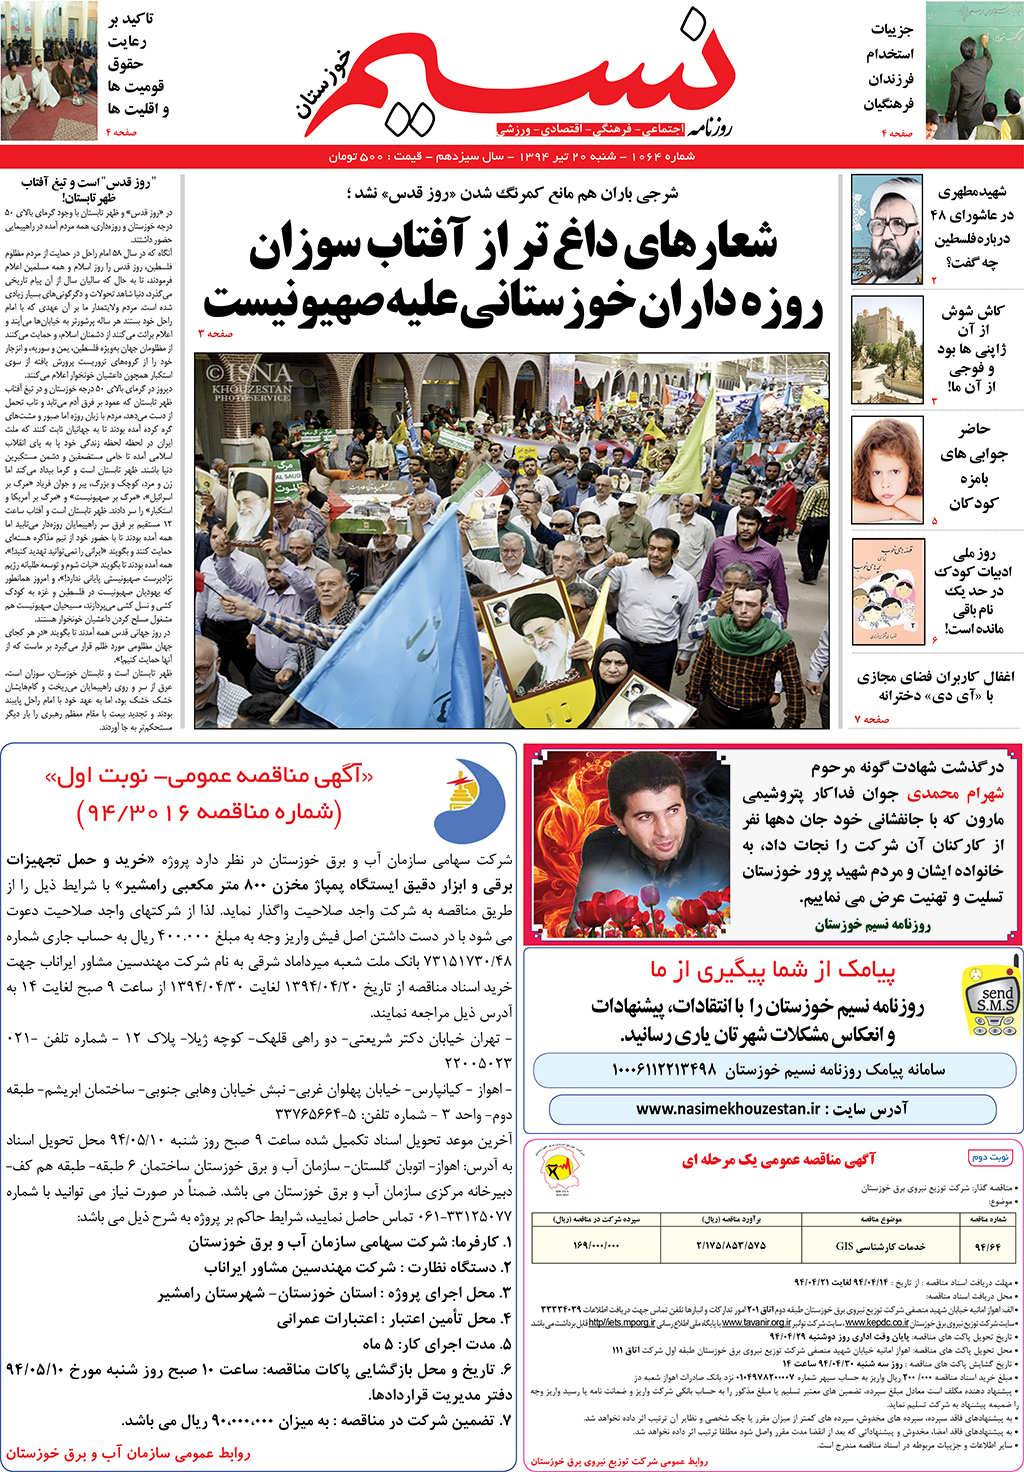 صفحه اصلی روزنامه نسیم شماره 1064